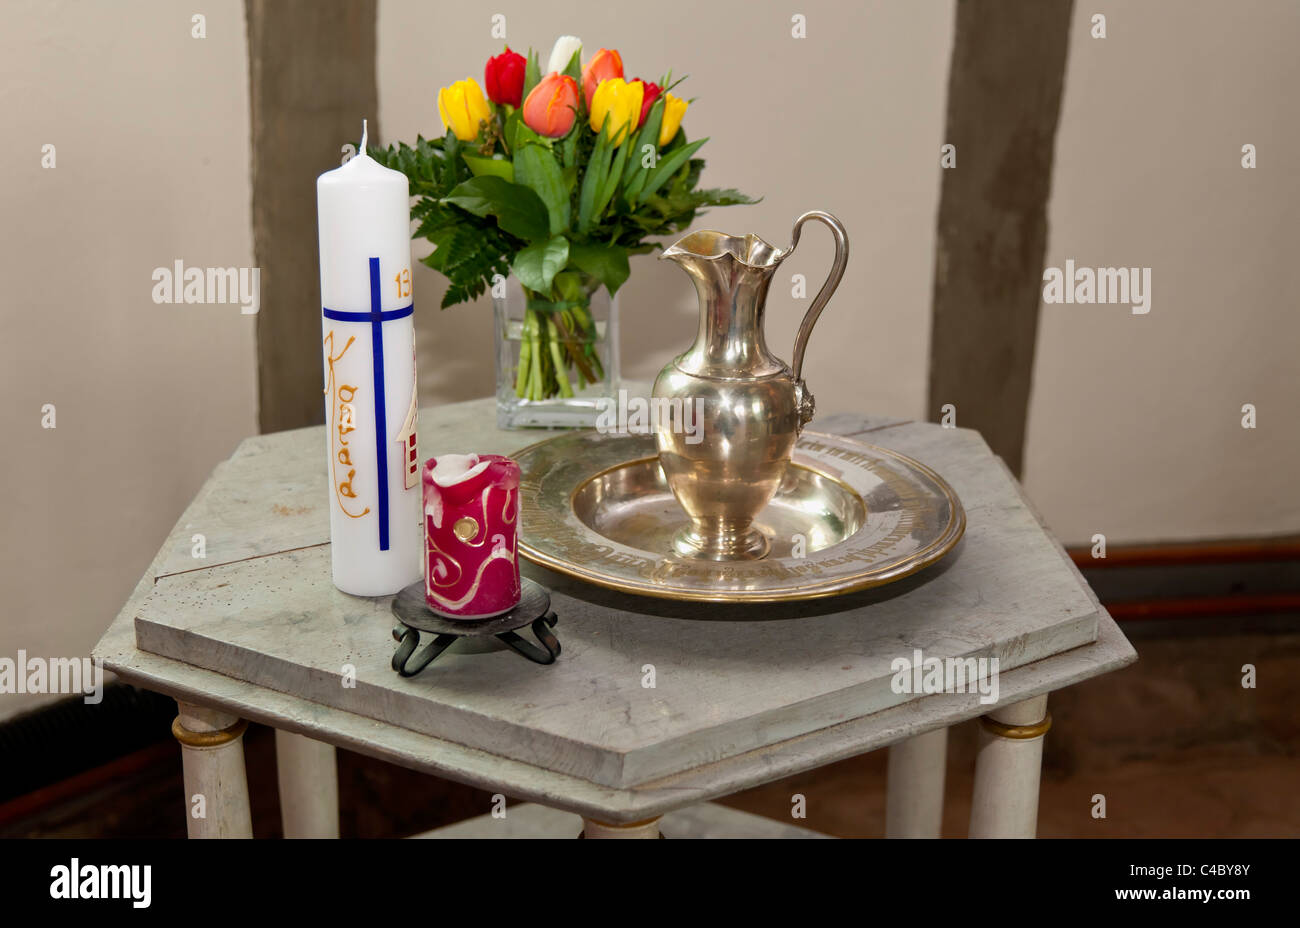 Voraussetzungen für die Taufe: Taufe Kerze mit dem Namen Konrad, Blumen, Krug für Taufwasser Stockfoto